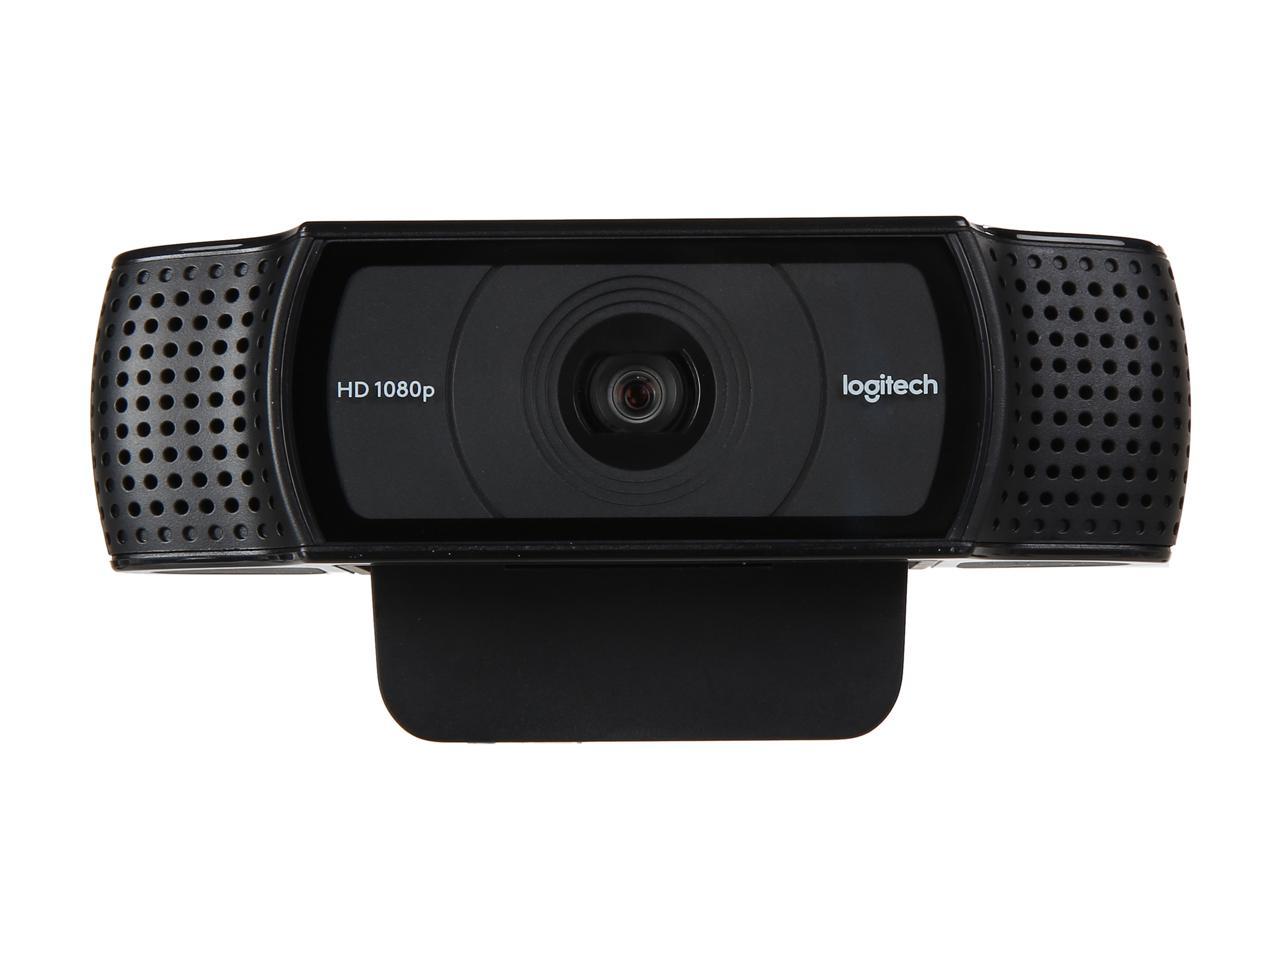 Logitech C920 USB 2.0 certified (USB 3.0 ready) HD Pro Webcam